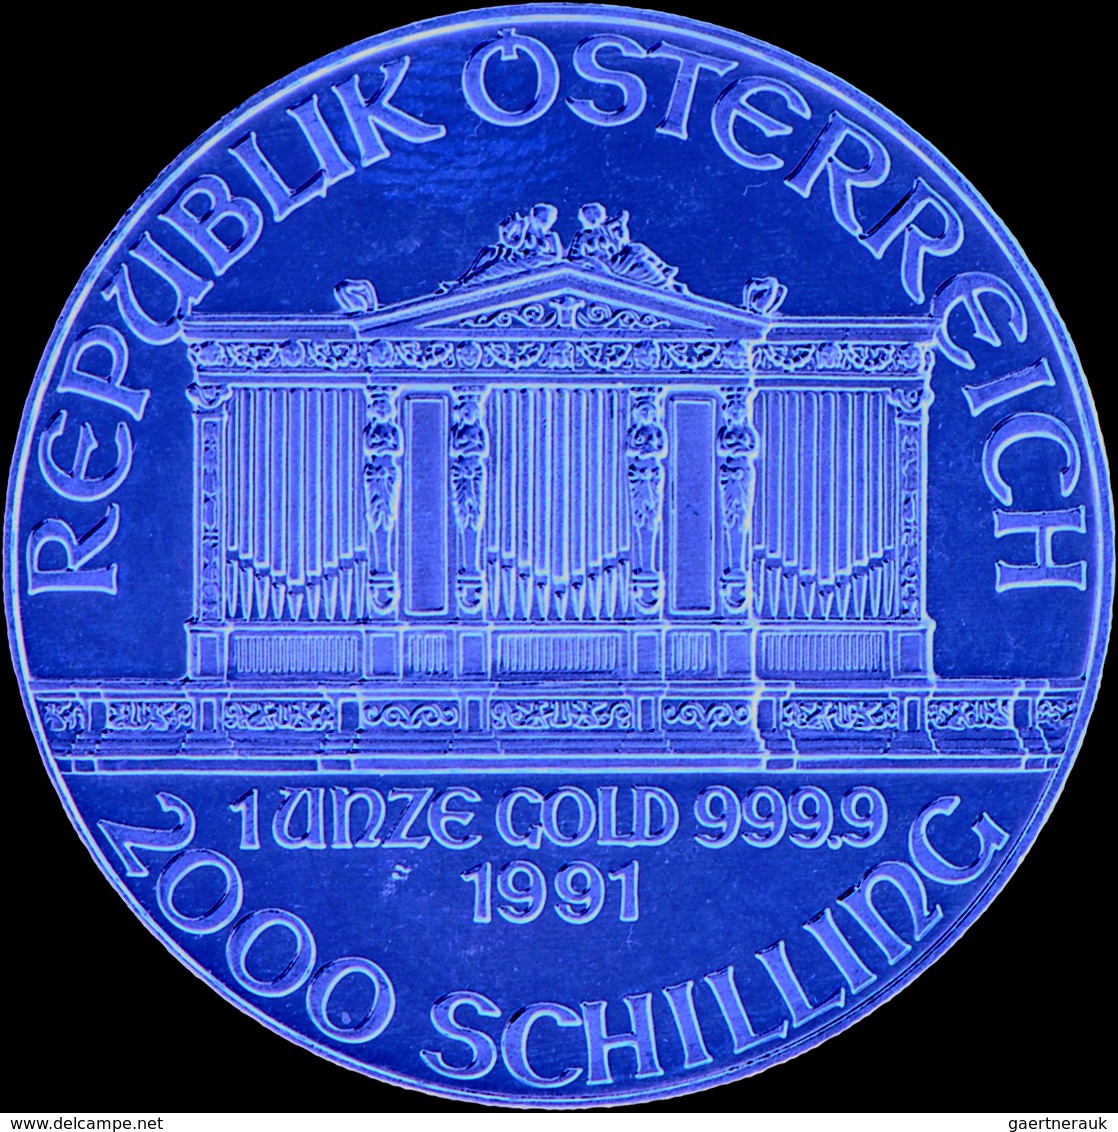 Österreich - Anlagegold: 2000 Schilling 1991, Wiener Philharmoniker, Gold 999,9, 31,1 G, Stemeplglan - Austria